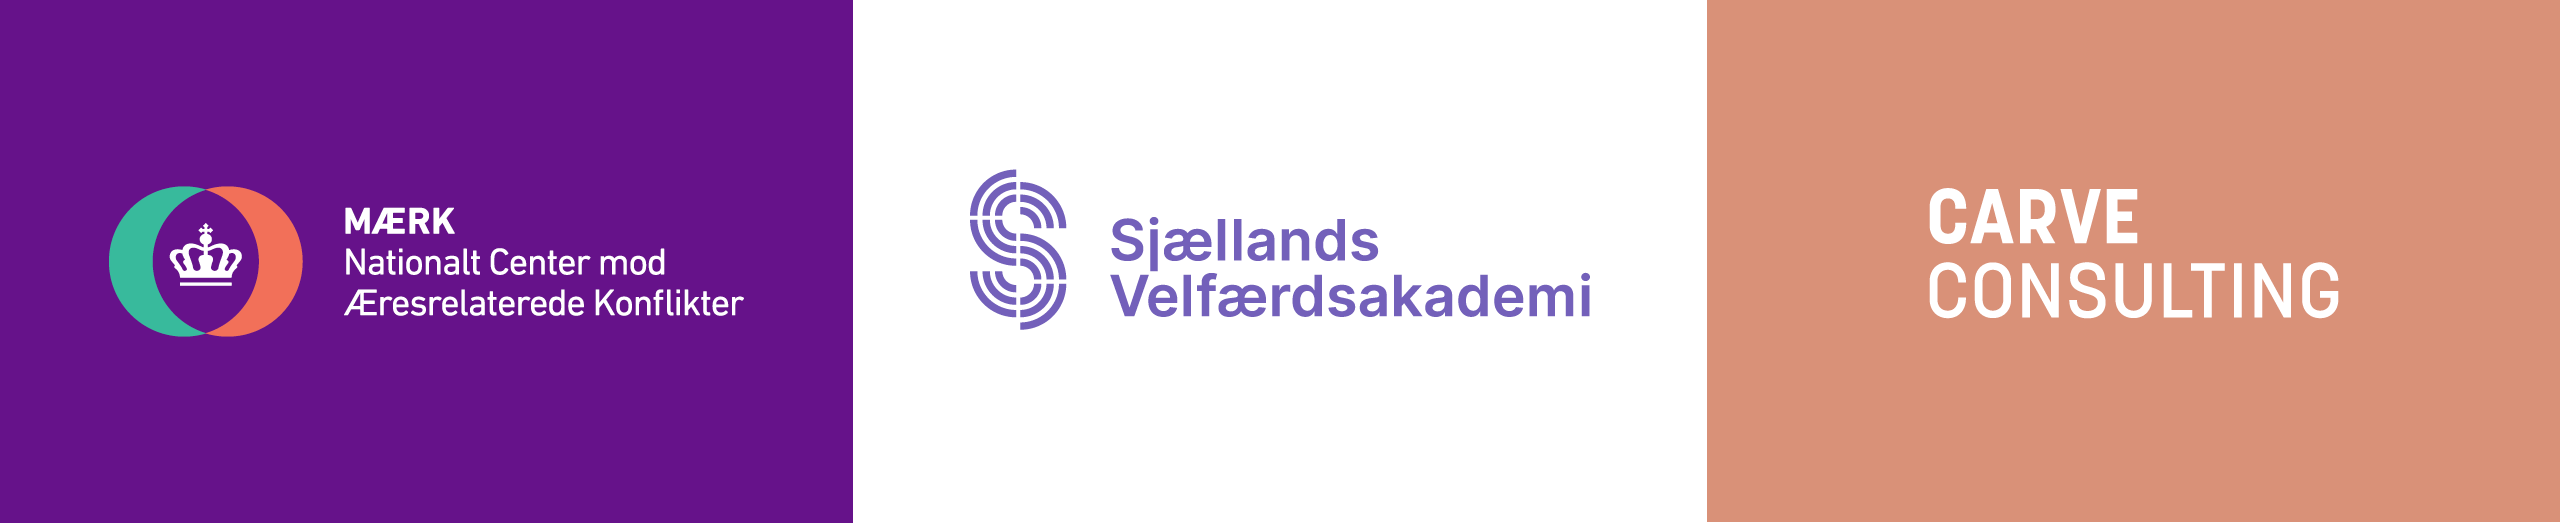 Logoer, Mærk, Sjællands Velfærdsakademi, Carve Consulting